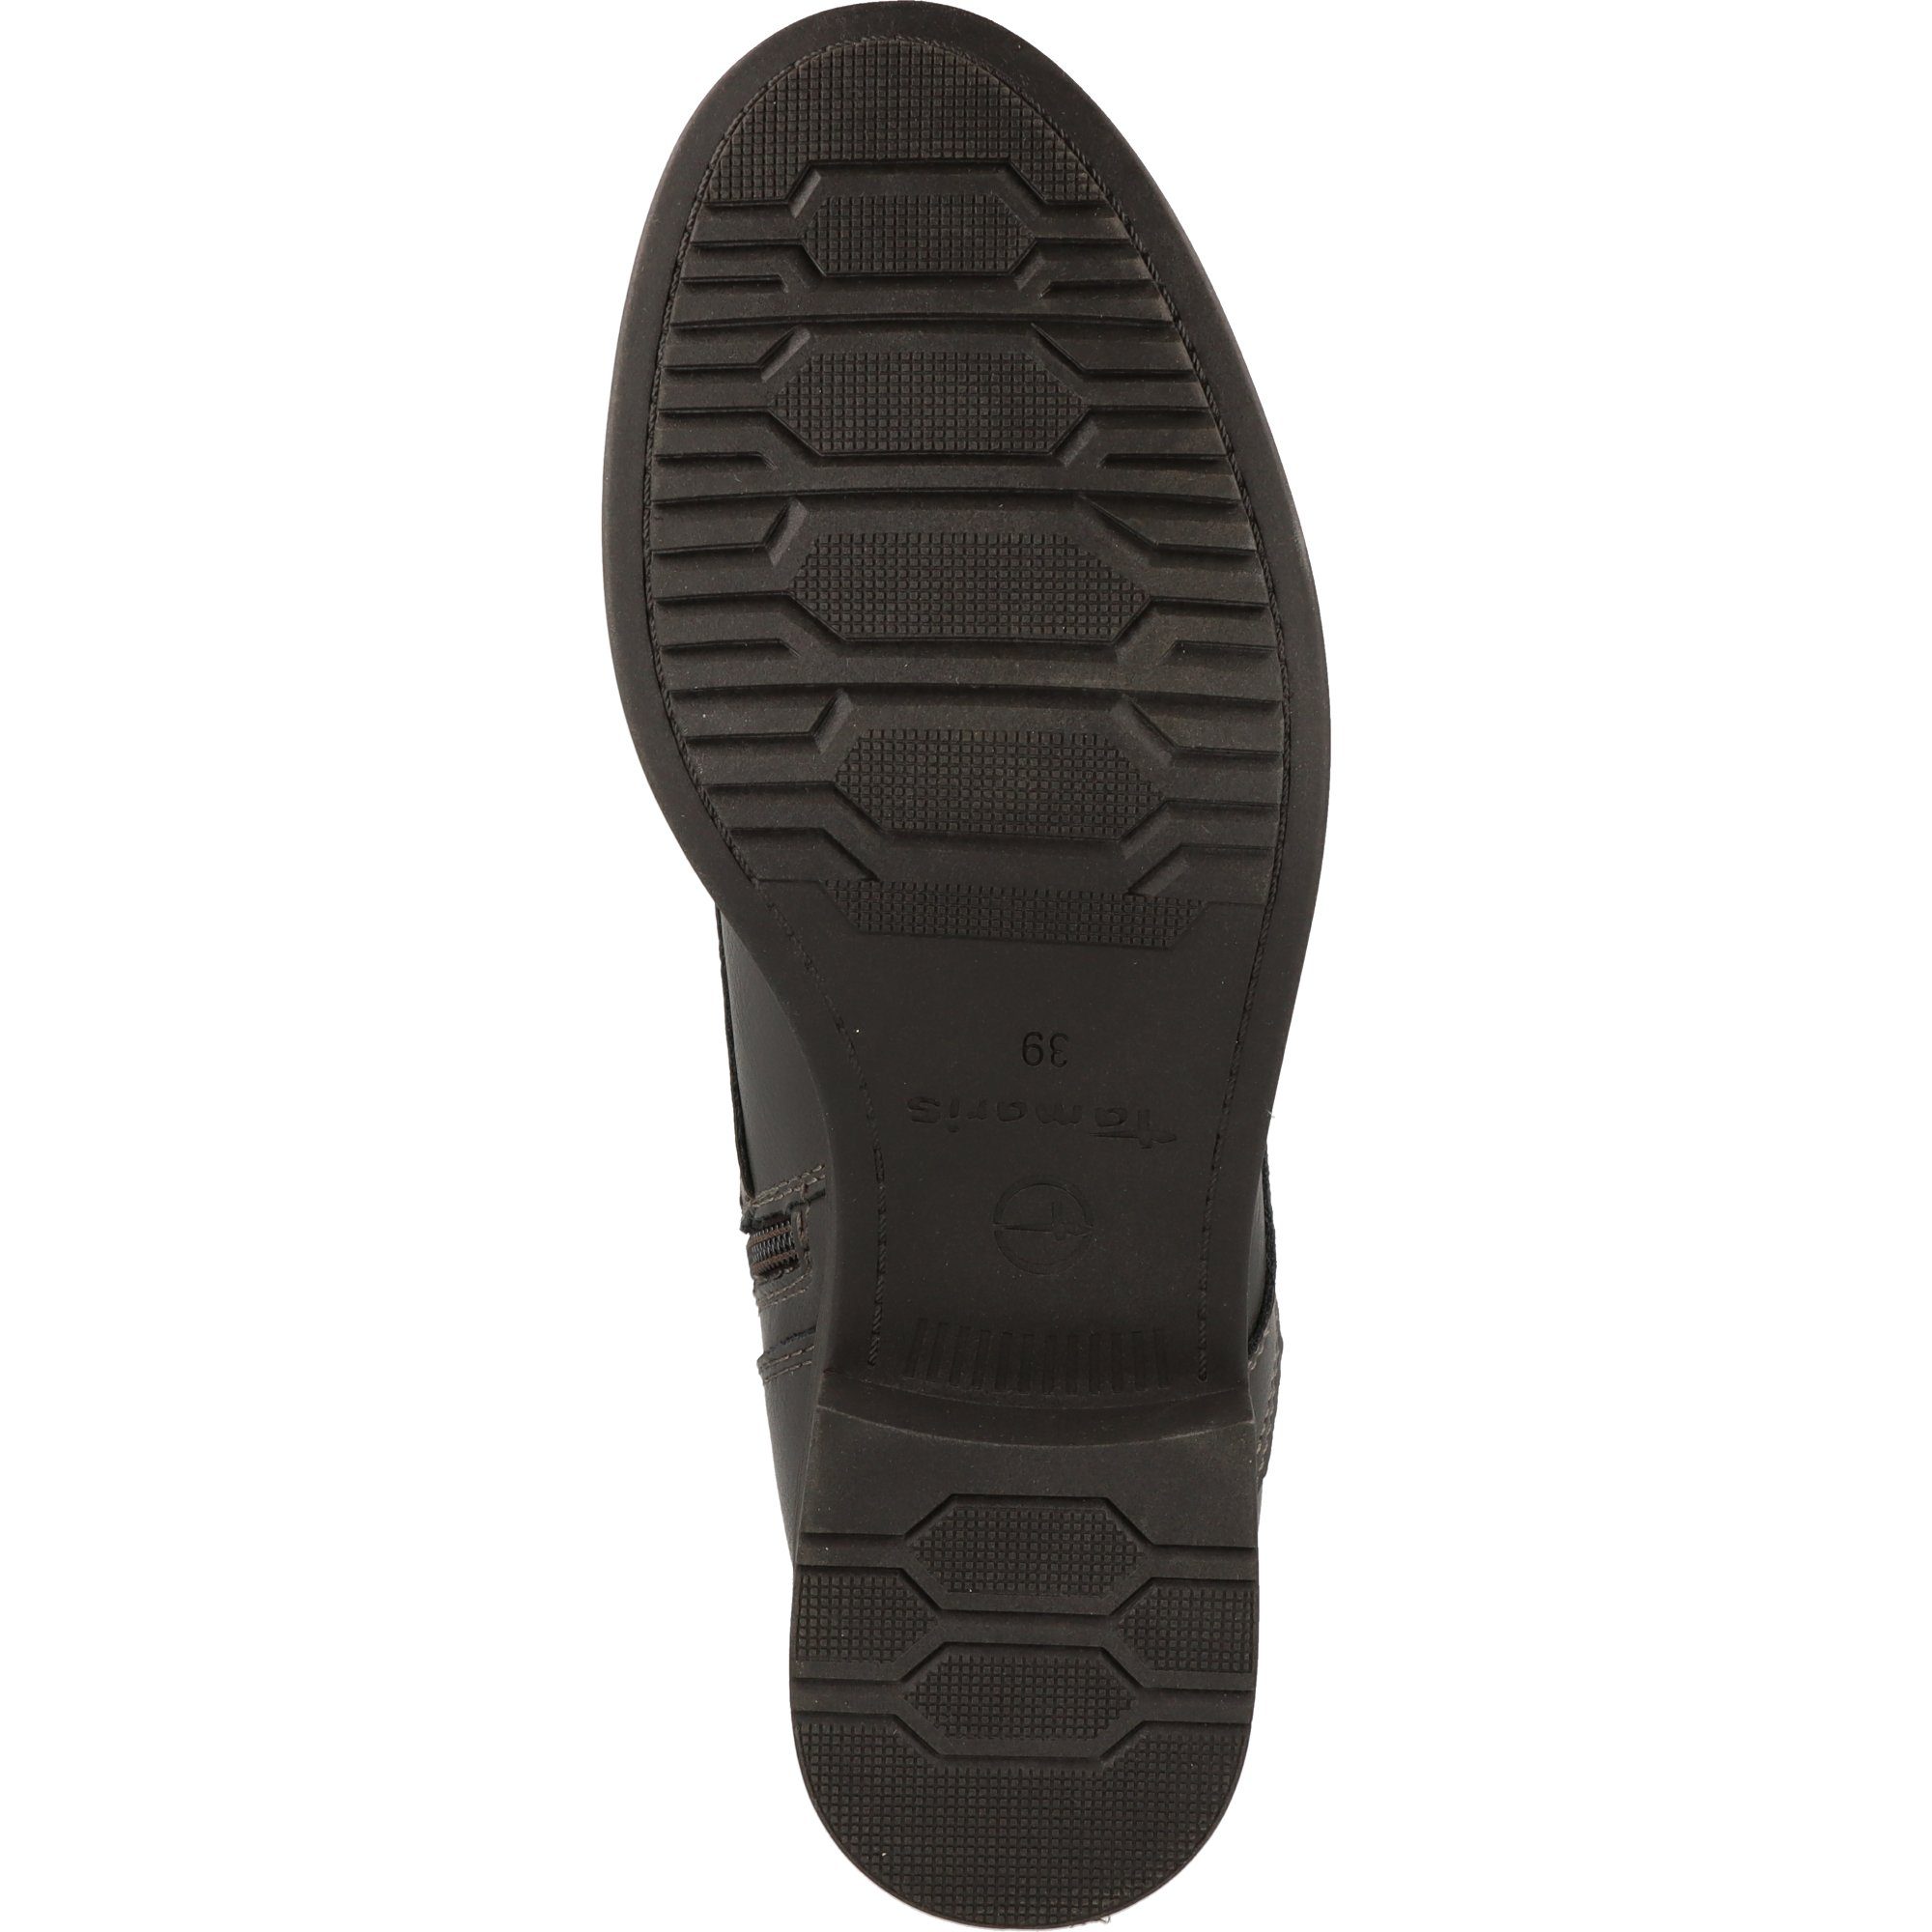 Tamaris Damen Schuhe Stiefelette 11-25107-29 219 Dark Stiefelette Grey Dunkelgrau Boots